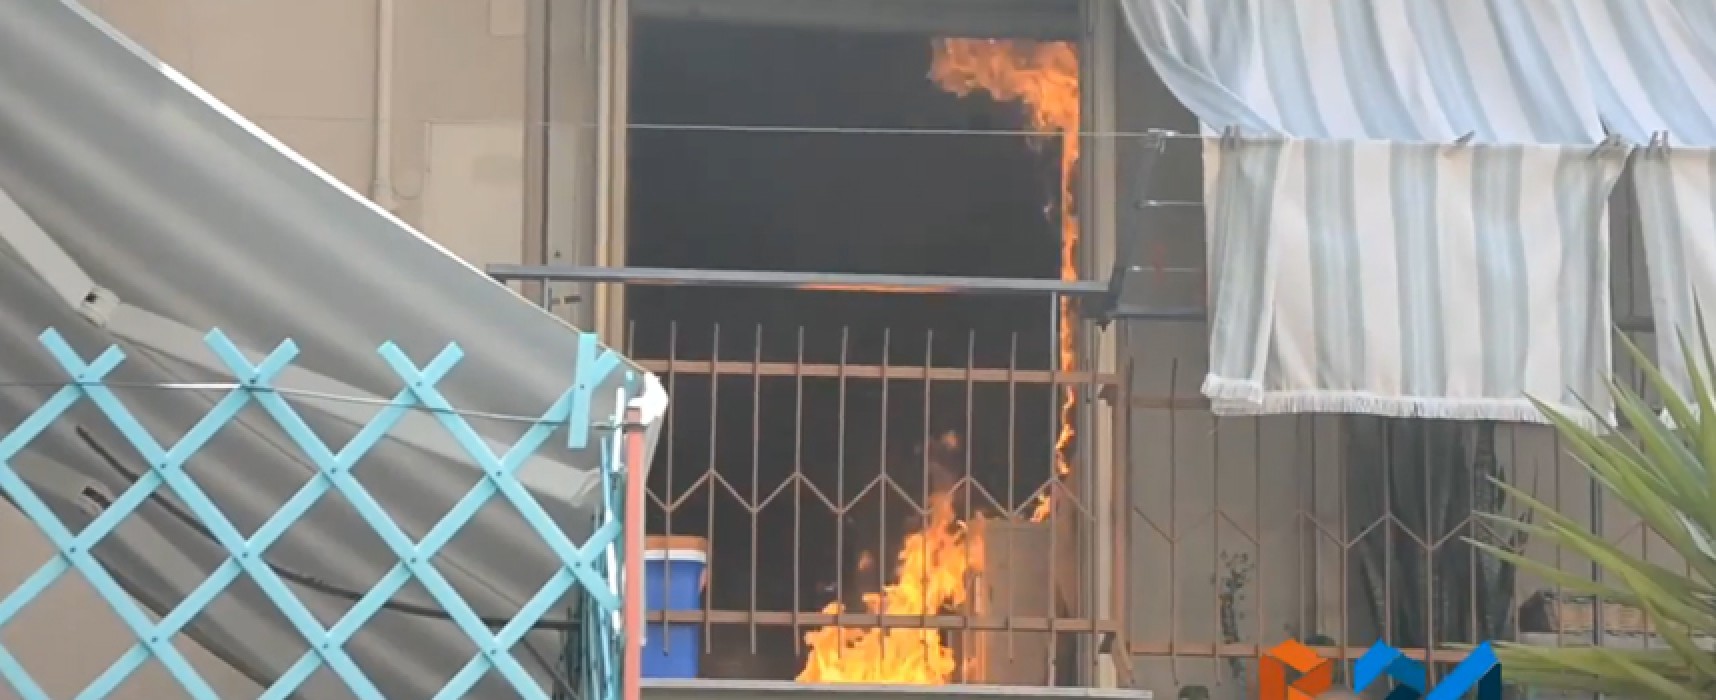 Stamane incendio in un appartamento di via della Riforma / VIDEO